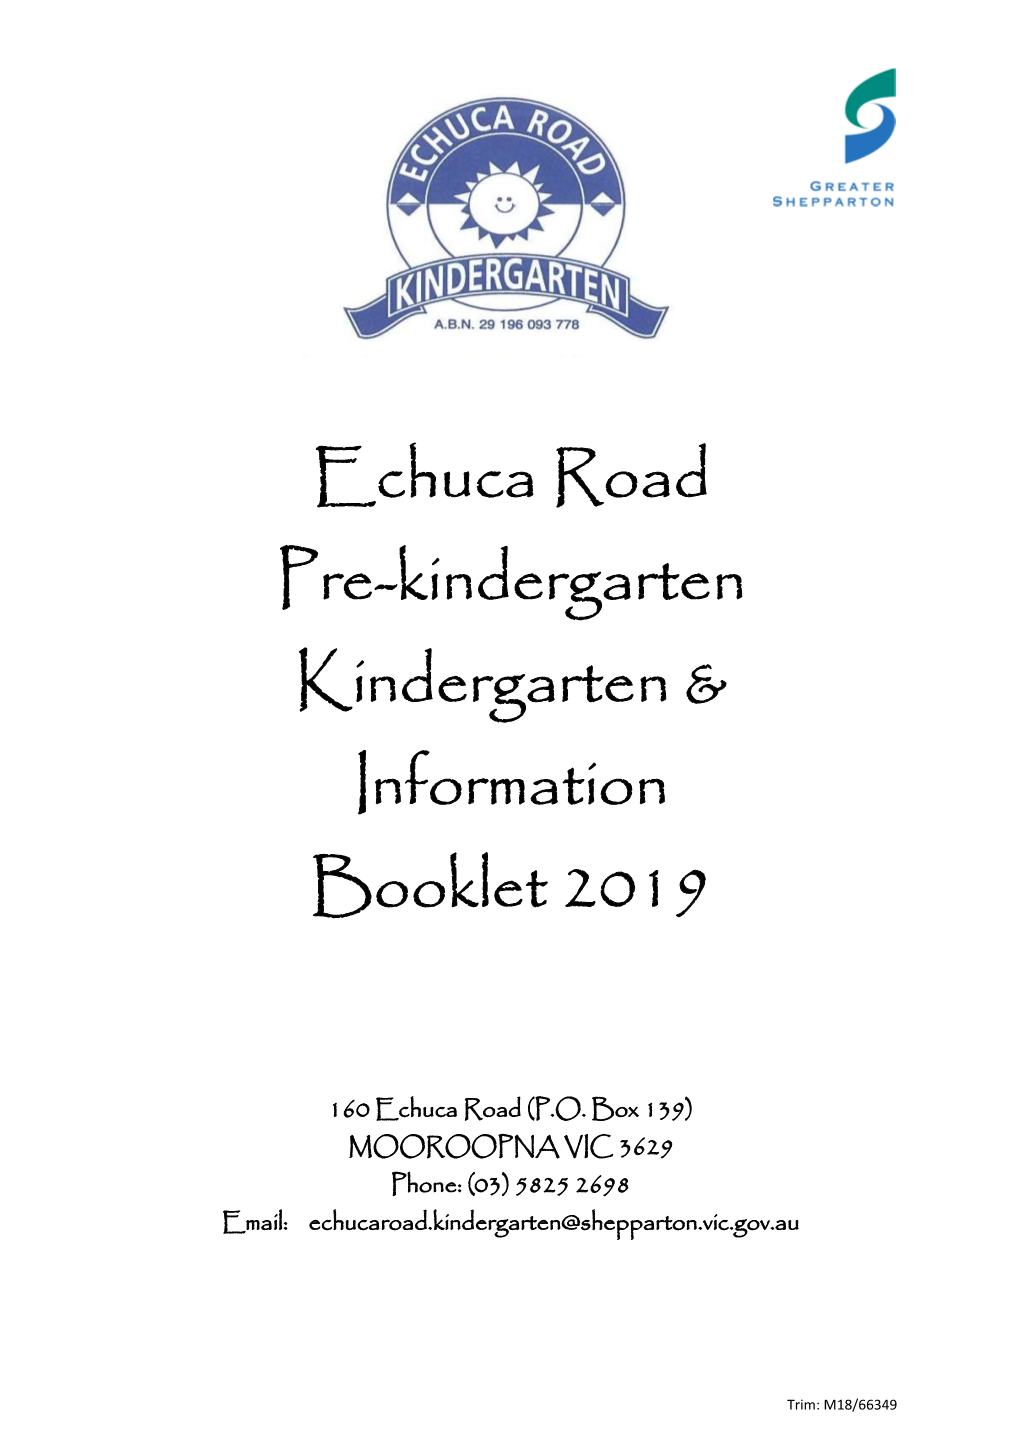 Echuca Road Pre-Kindergarten Kindergarten & Information Booklet